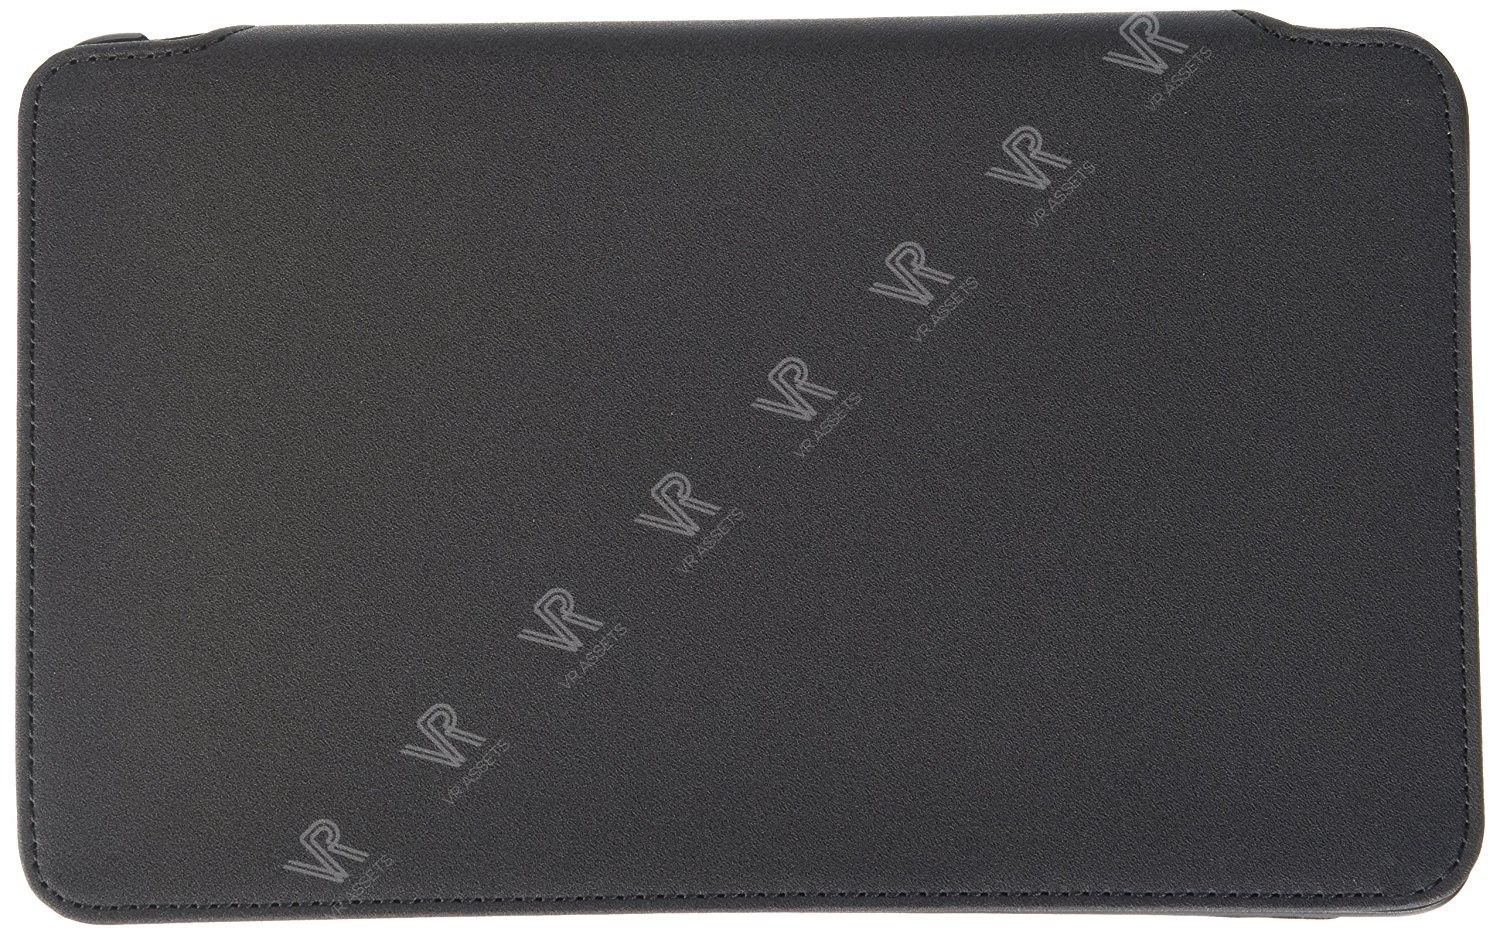 Dell Venue 8 Pro 3840 Tablet Folio Rotating Case Cover NJXFG 0NJXFG NEW